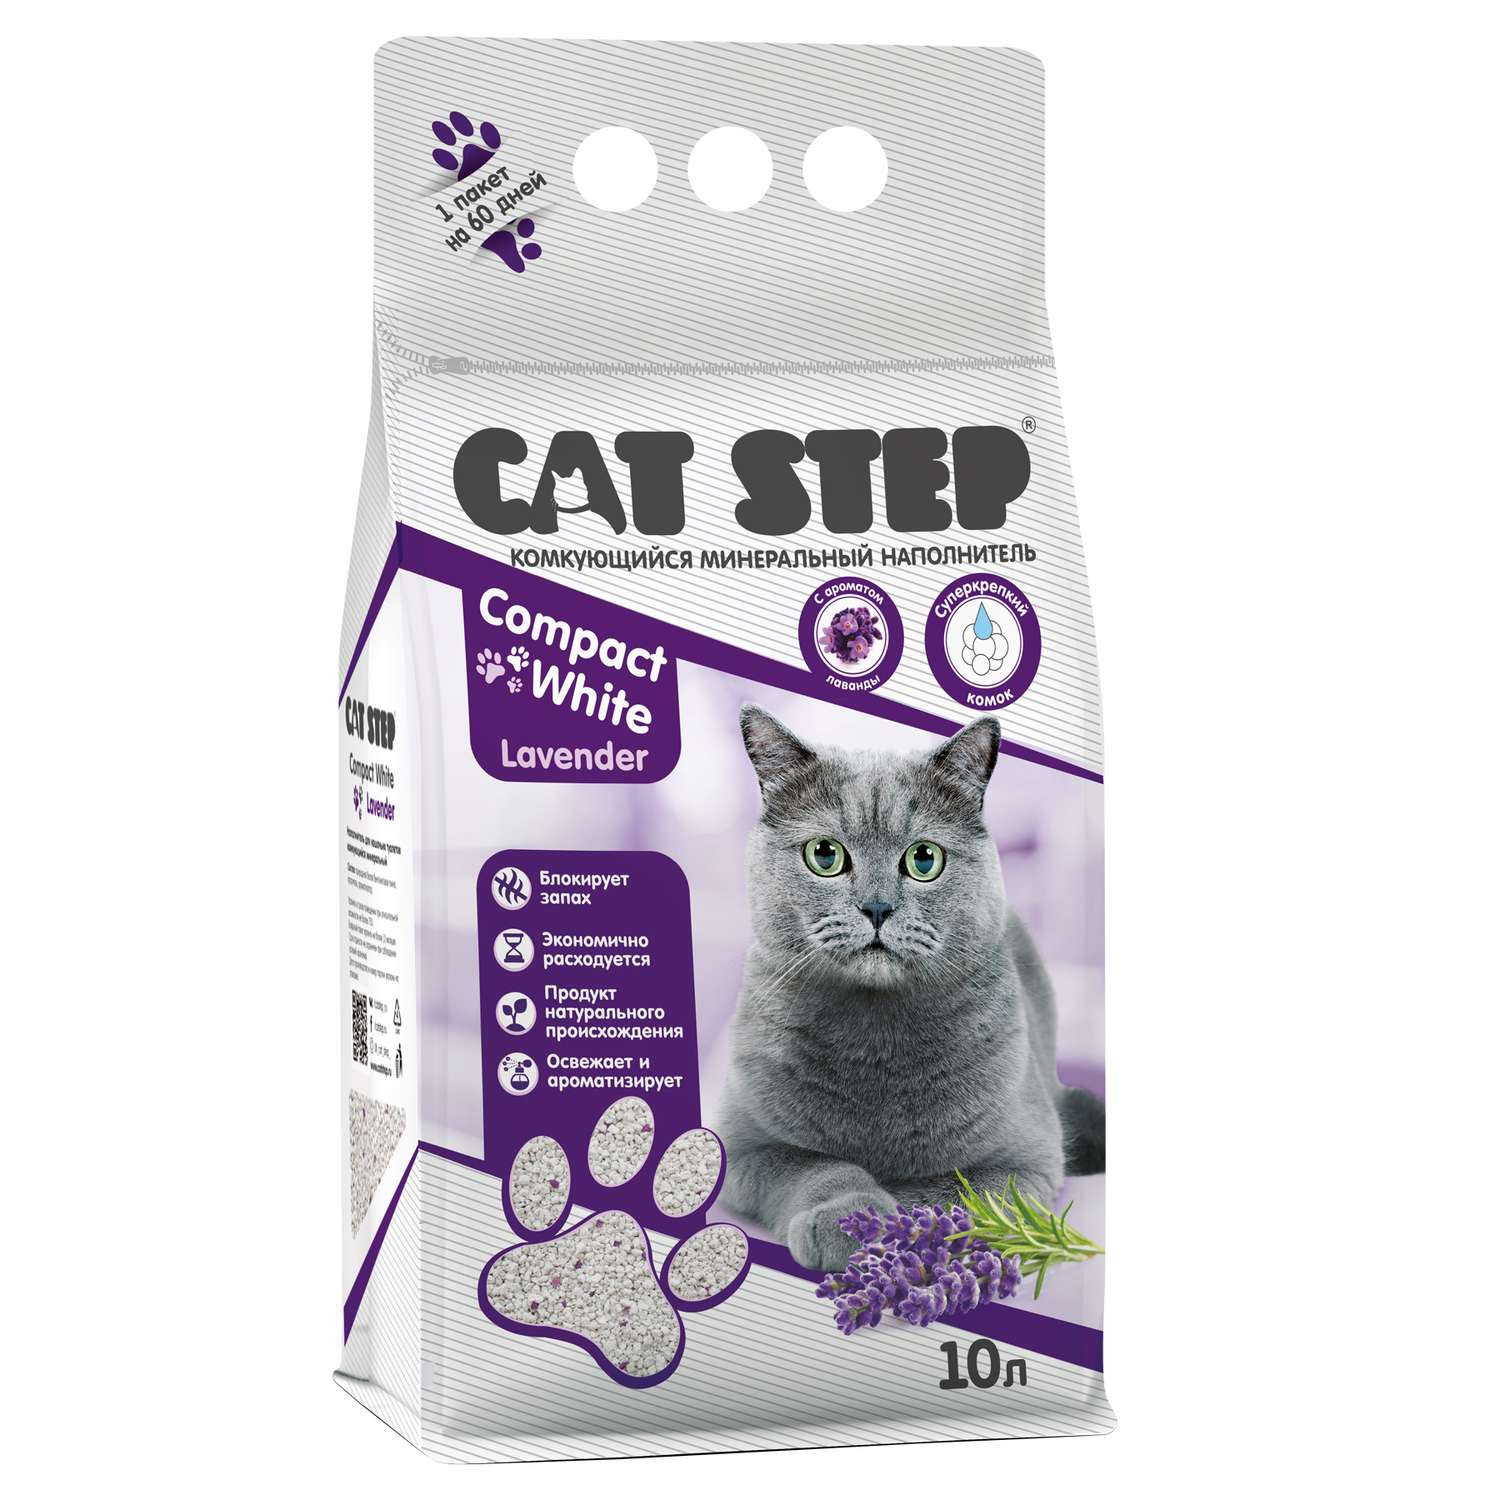 Наполнитель для кошек Cat Step Compact White Lavender комкующийся минеральный 10л - фото 1